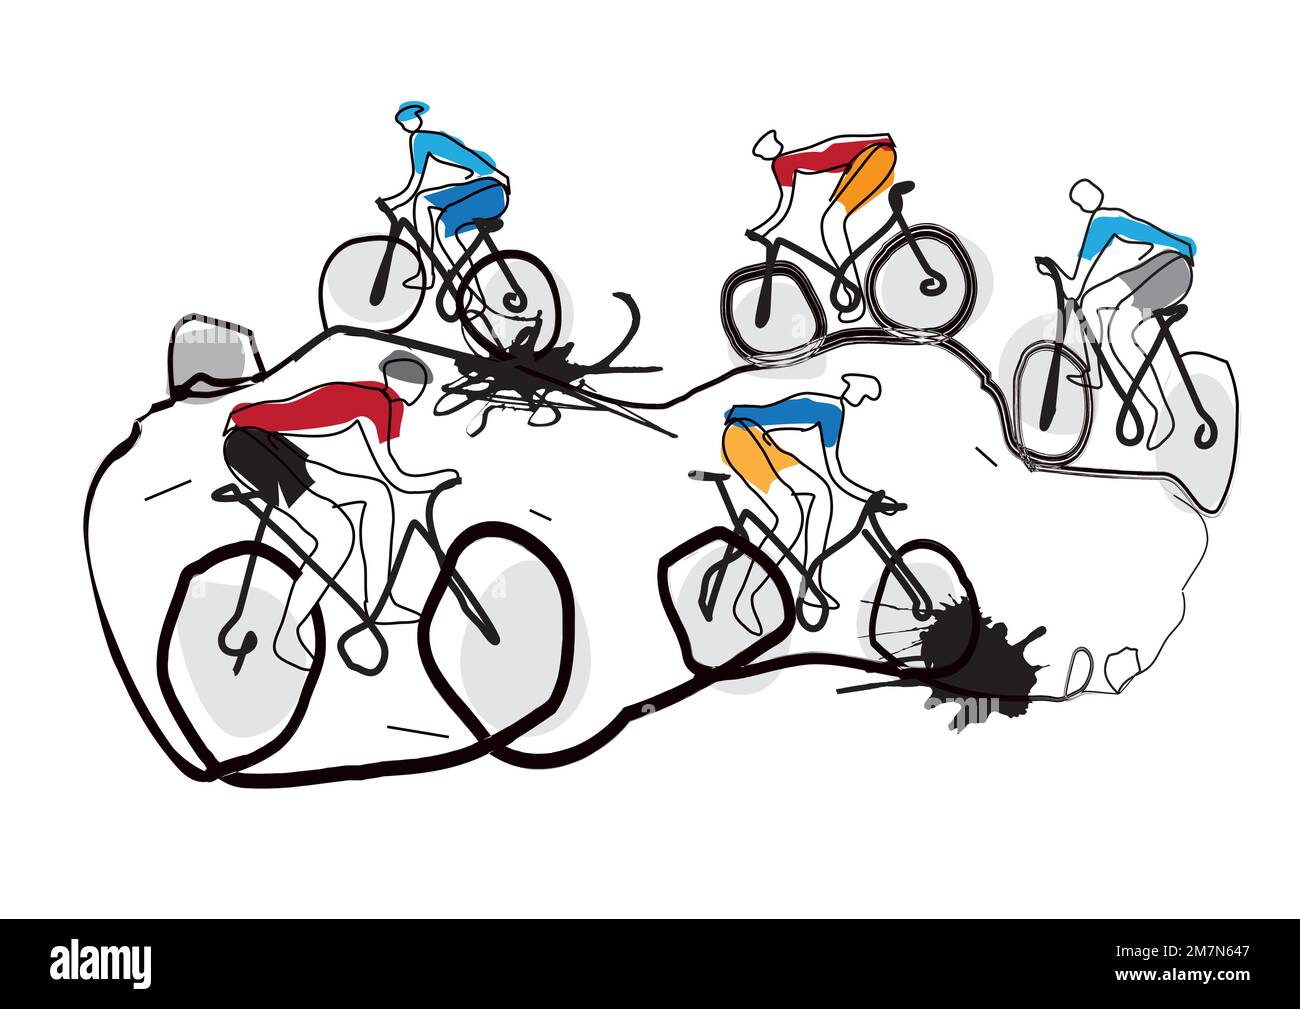 Concours de VTT, course cycliste, art stylisé. Illustration amusante et expressive du VTT extrême mtb. Mise en plan de ligne continue. Illustration de Vecteur